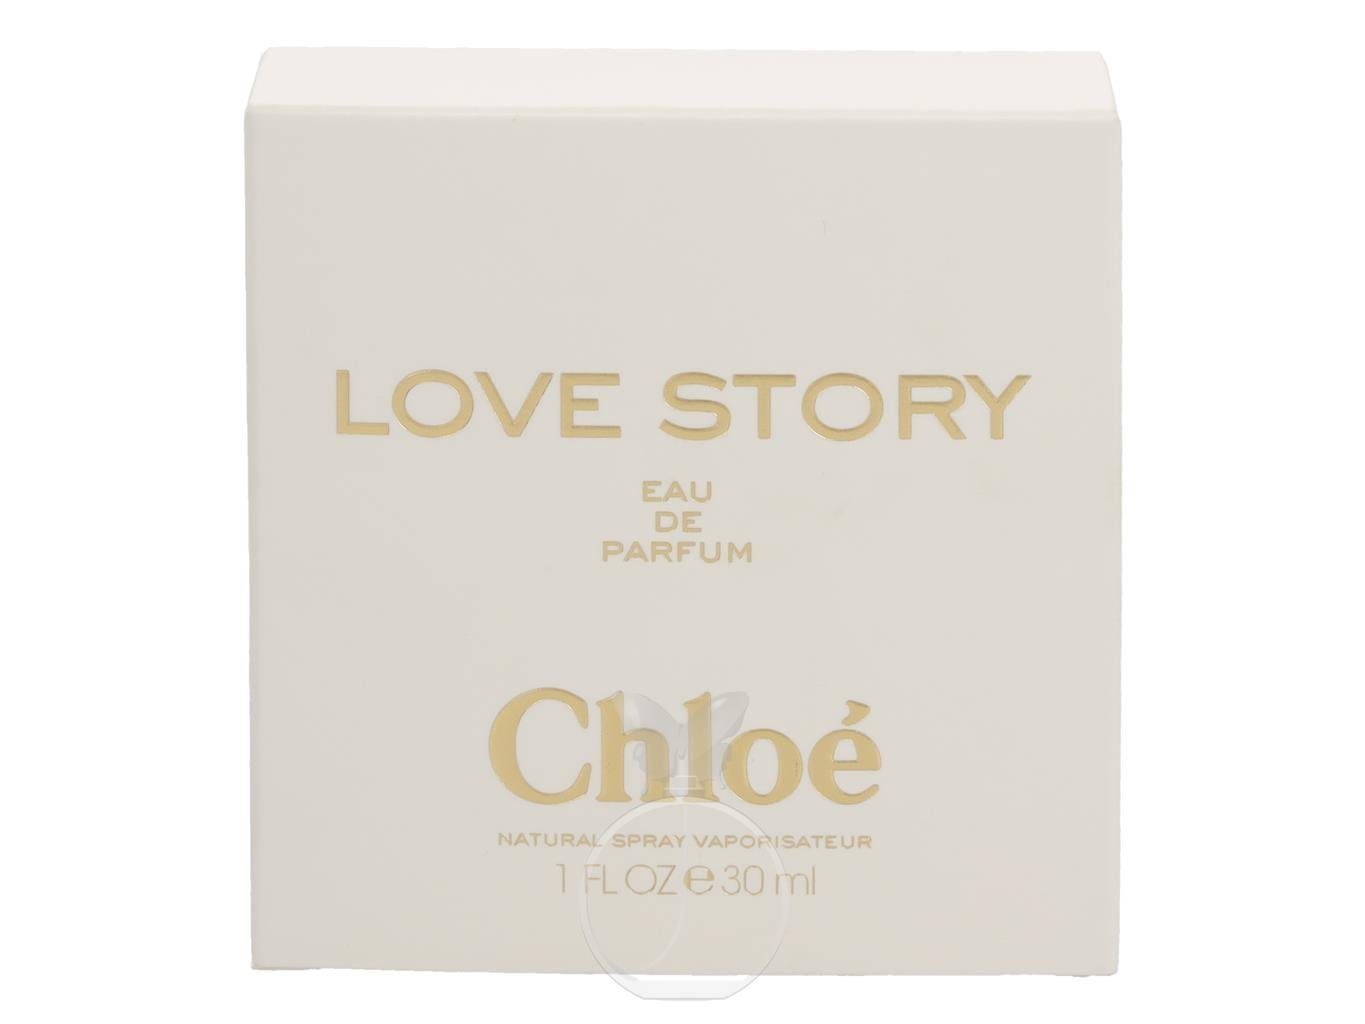 ml, Parfum Chloe Eau Story de Love Eau Chloé de 1-tlg. 30 Parfum